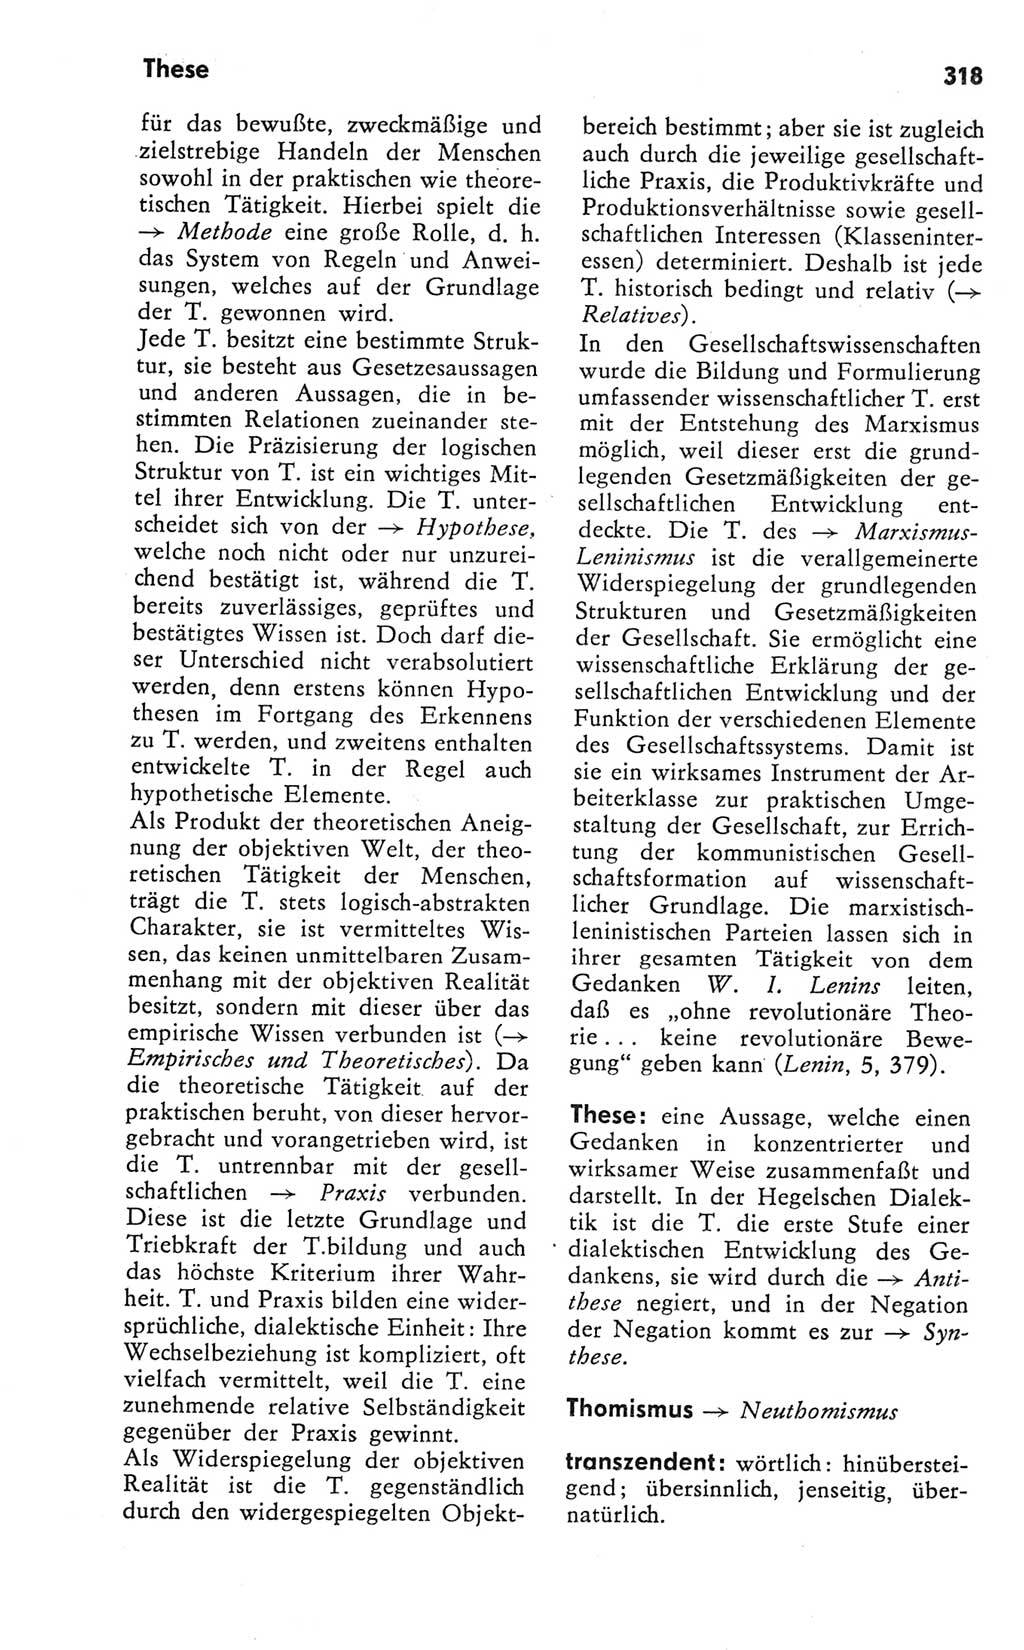 Kleines Wörterbuch der marxistisch-leninistischen Philosophie [Deutsche Demokratische Republik (DDR)] 1981, Seite 318 (Kl. Wb. ML Phil. DDR 1981, S. 318)